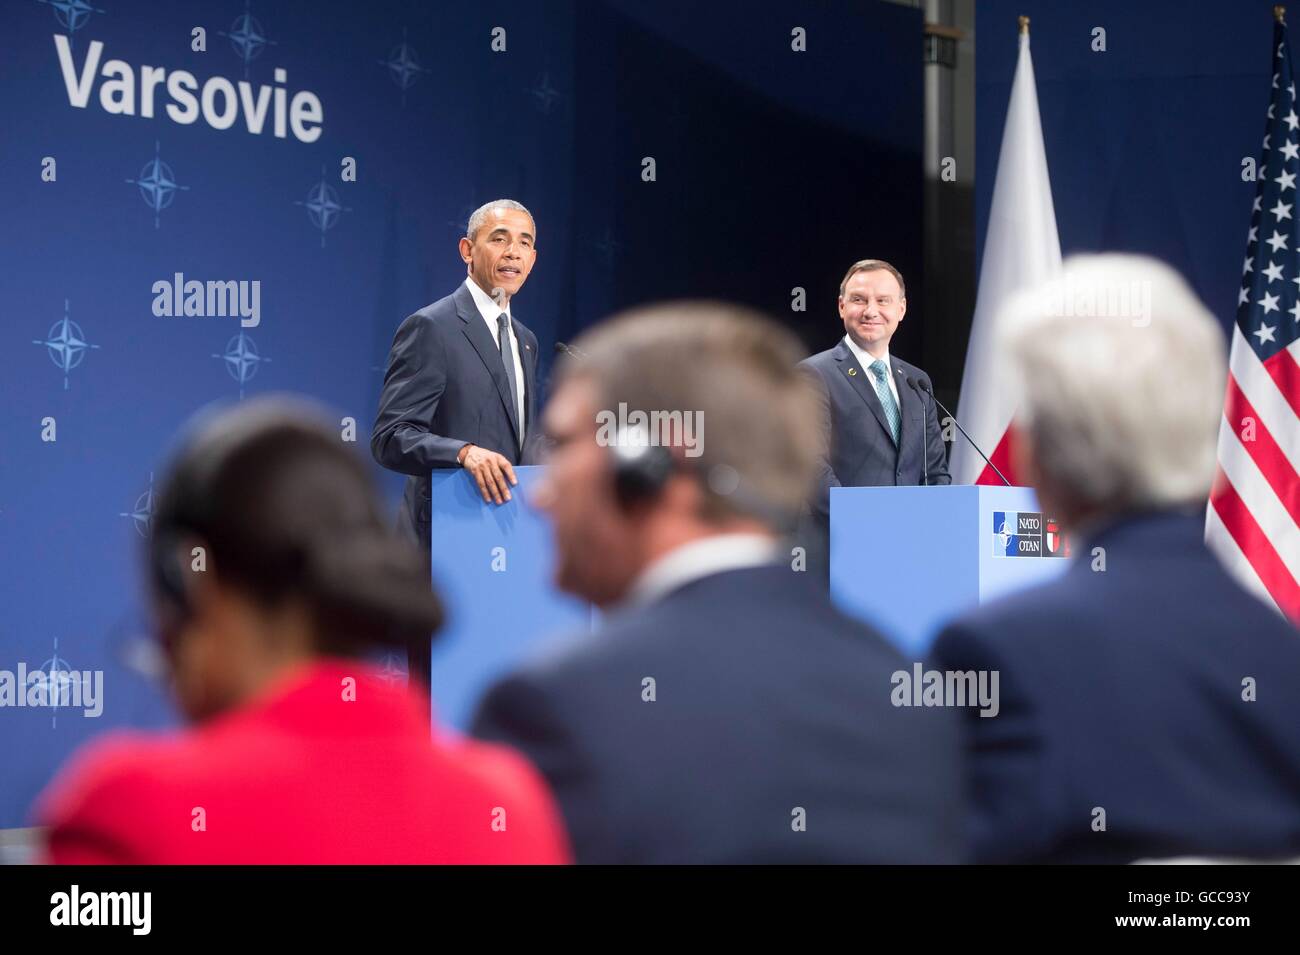 Président américain Barack Obama et le président polonais Andrzej Duda tenir une conférence de presse conjointe à la suite de leur réunion bilatérale en marge du sommet de l'OTAN, le 8 juillet 2016 à Varsovie, Pologne. Banque D'Images